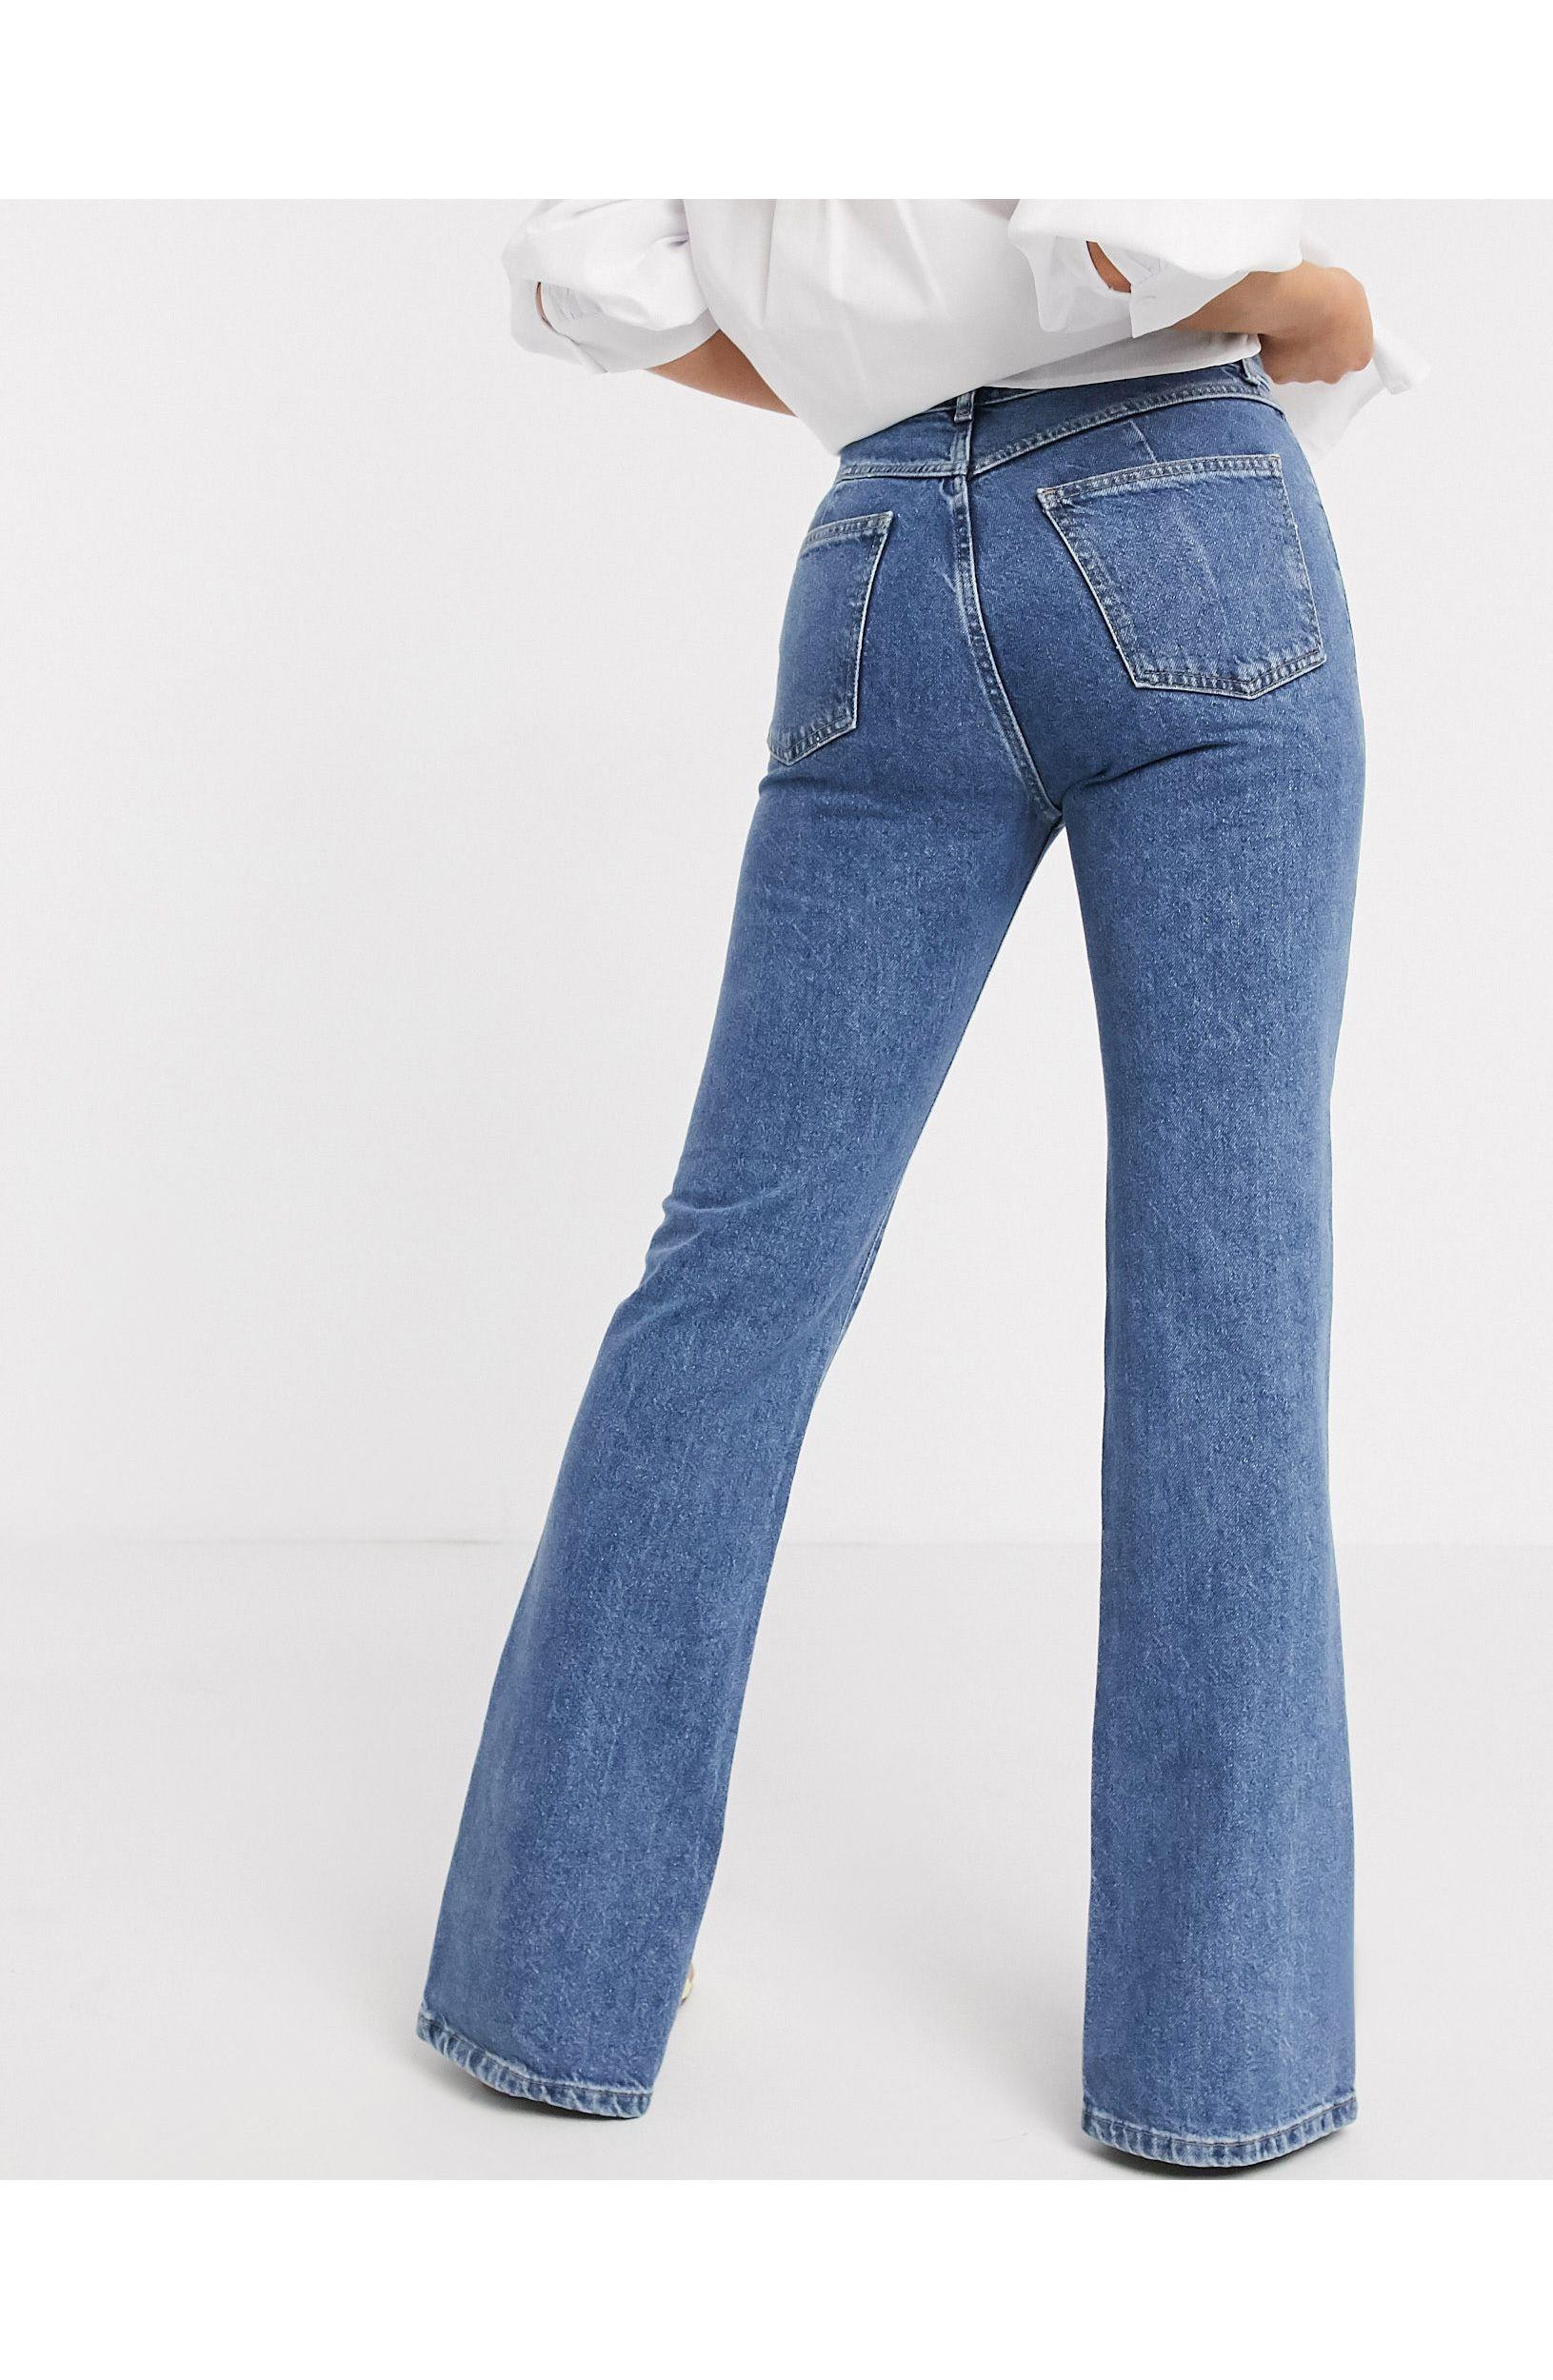 parallel Oppositie Vermeend Pull&Bear Split Front Jean in Blue | Lyst